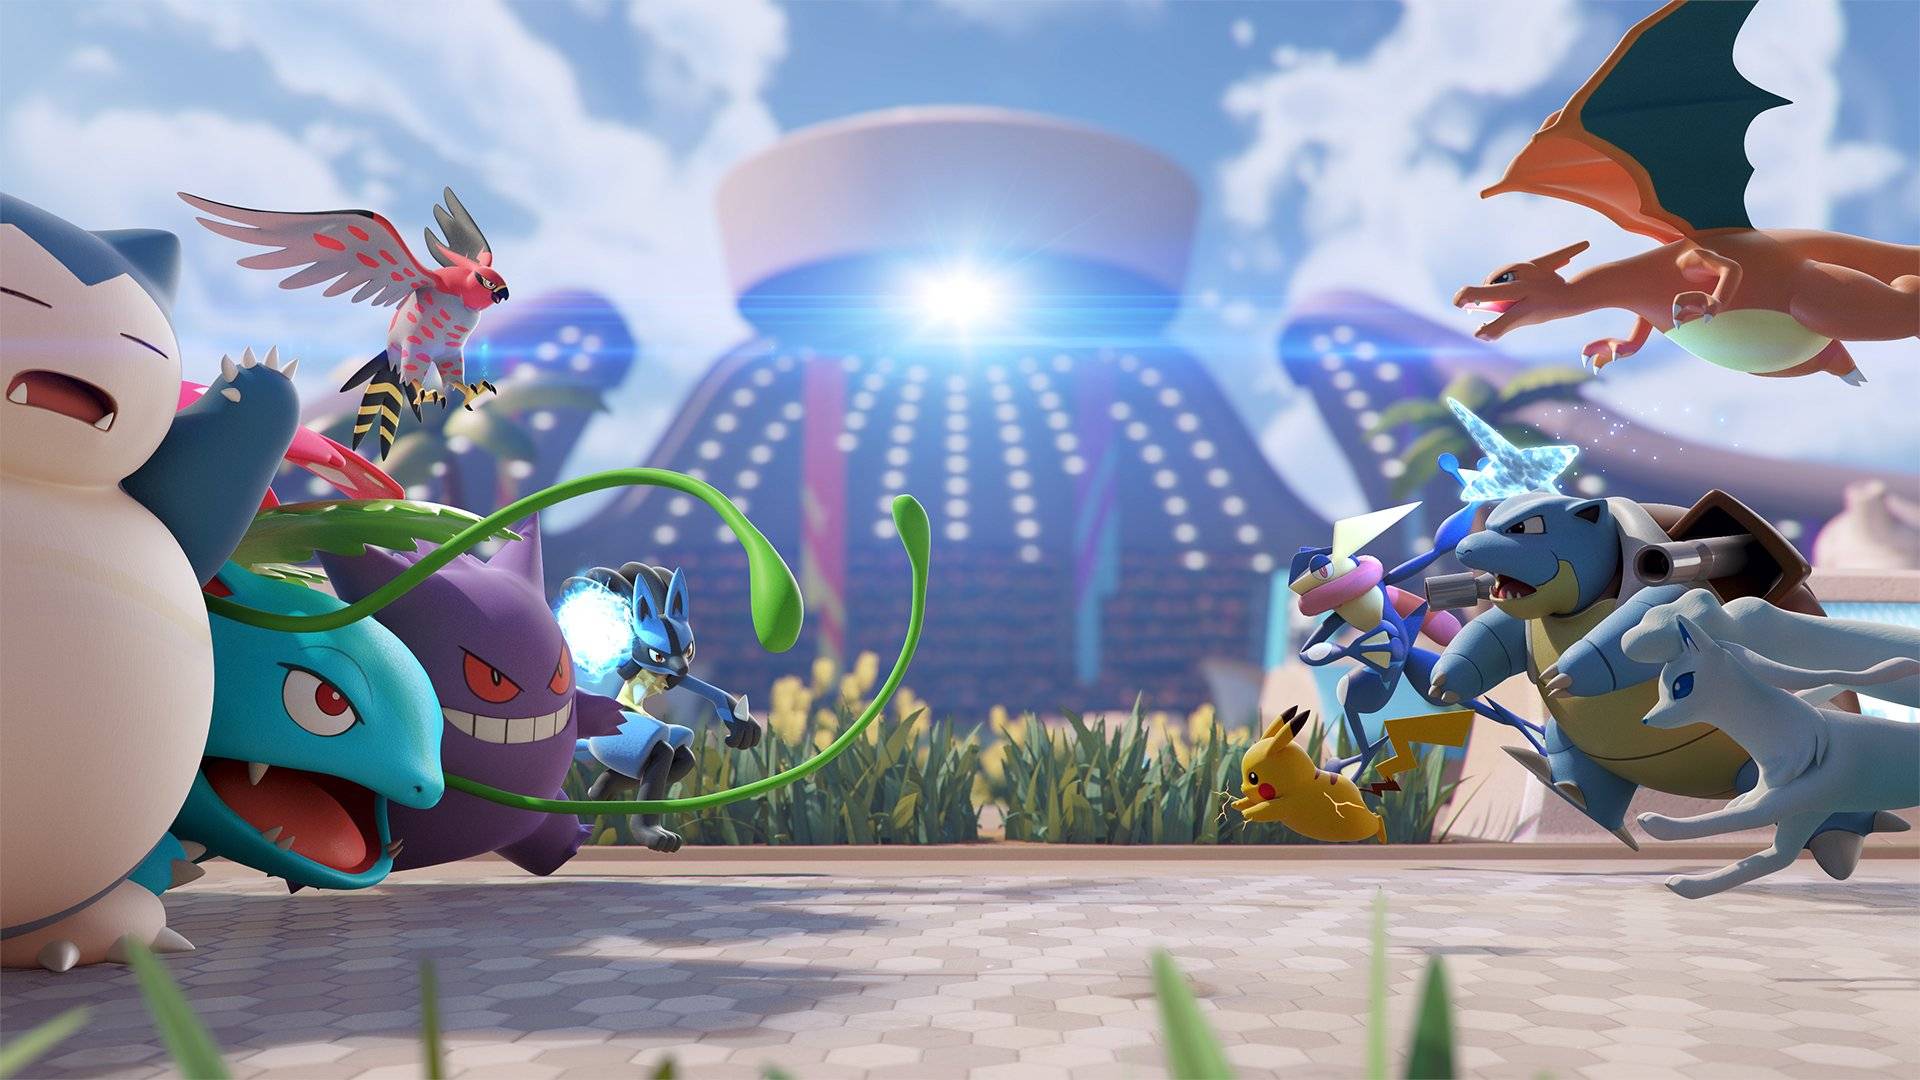 Två lag av Pokémon rusar mot varandra från vardera sidan av en arena